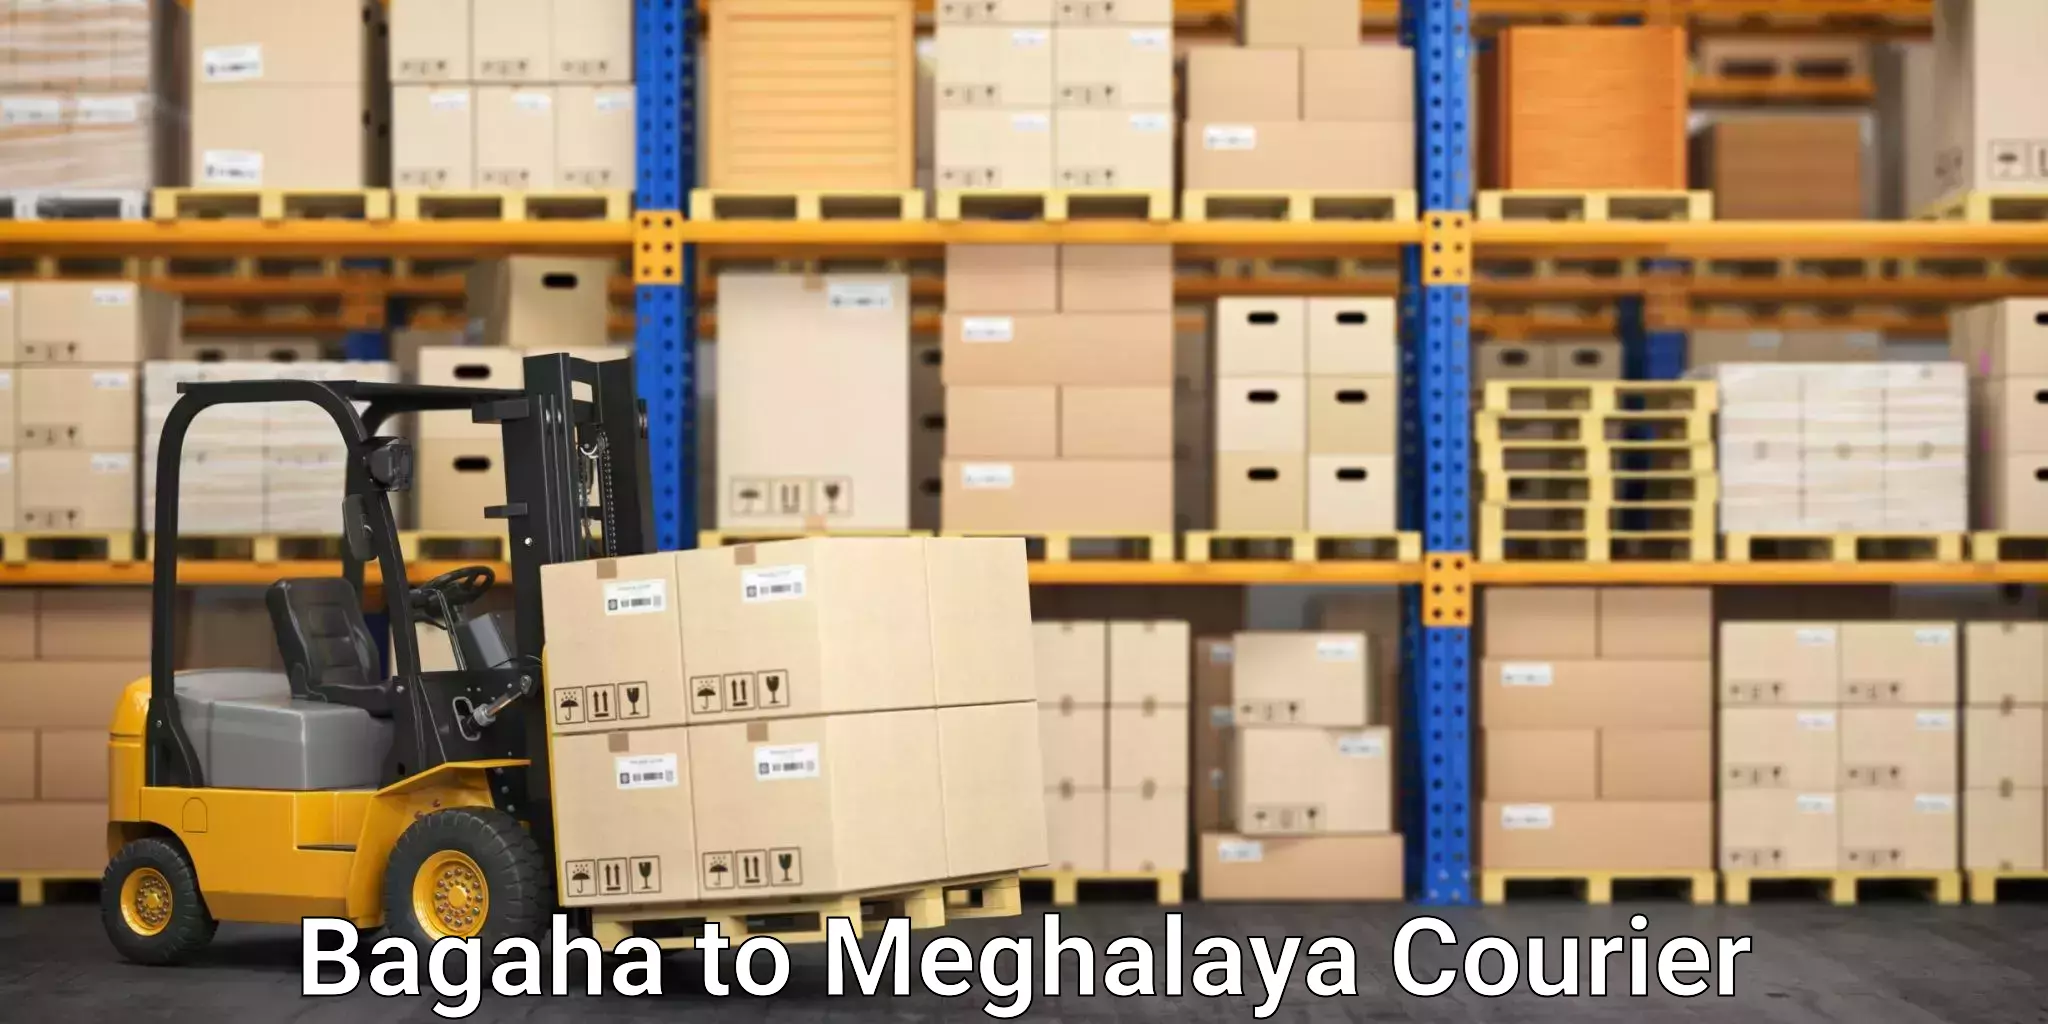 Furniture moving and handling Bagaha to Meghalaya